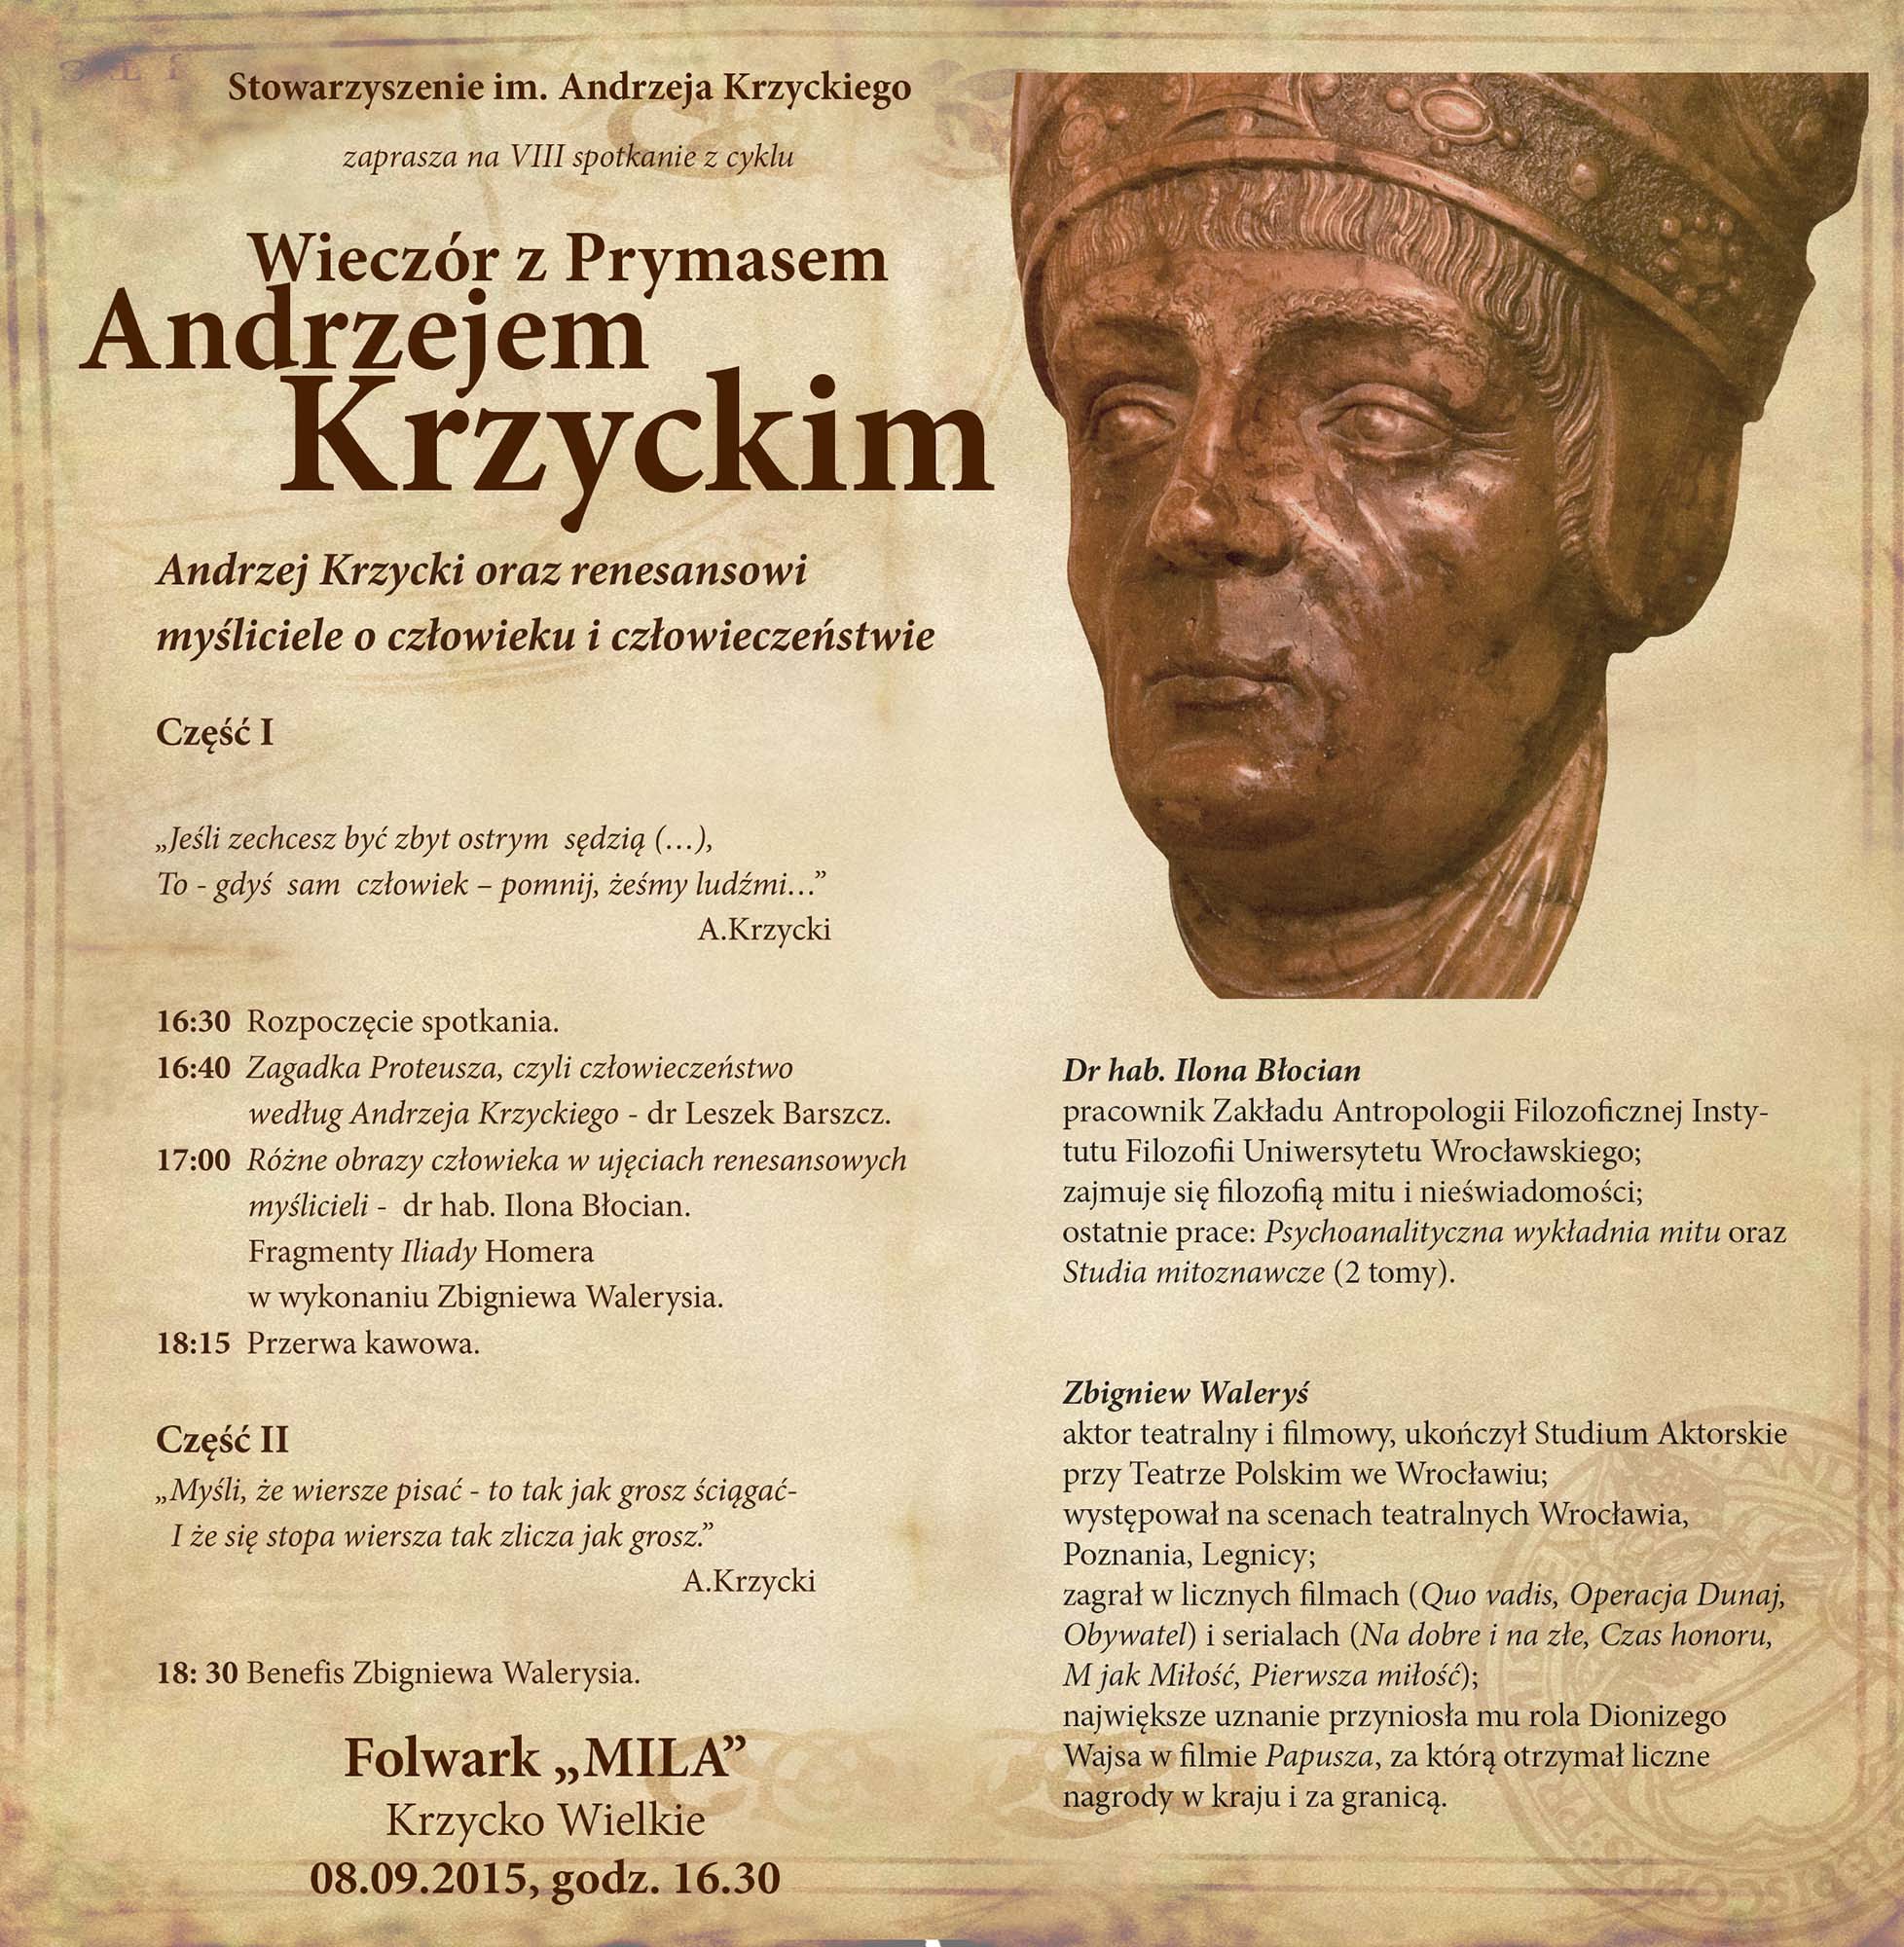 Wieczór z Krzyckim 2015 ,,Andrzej Krzycki oraz renesansowi myśliciele o człowieku i człowieczeństwie”